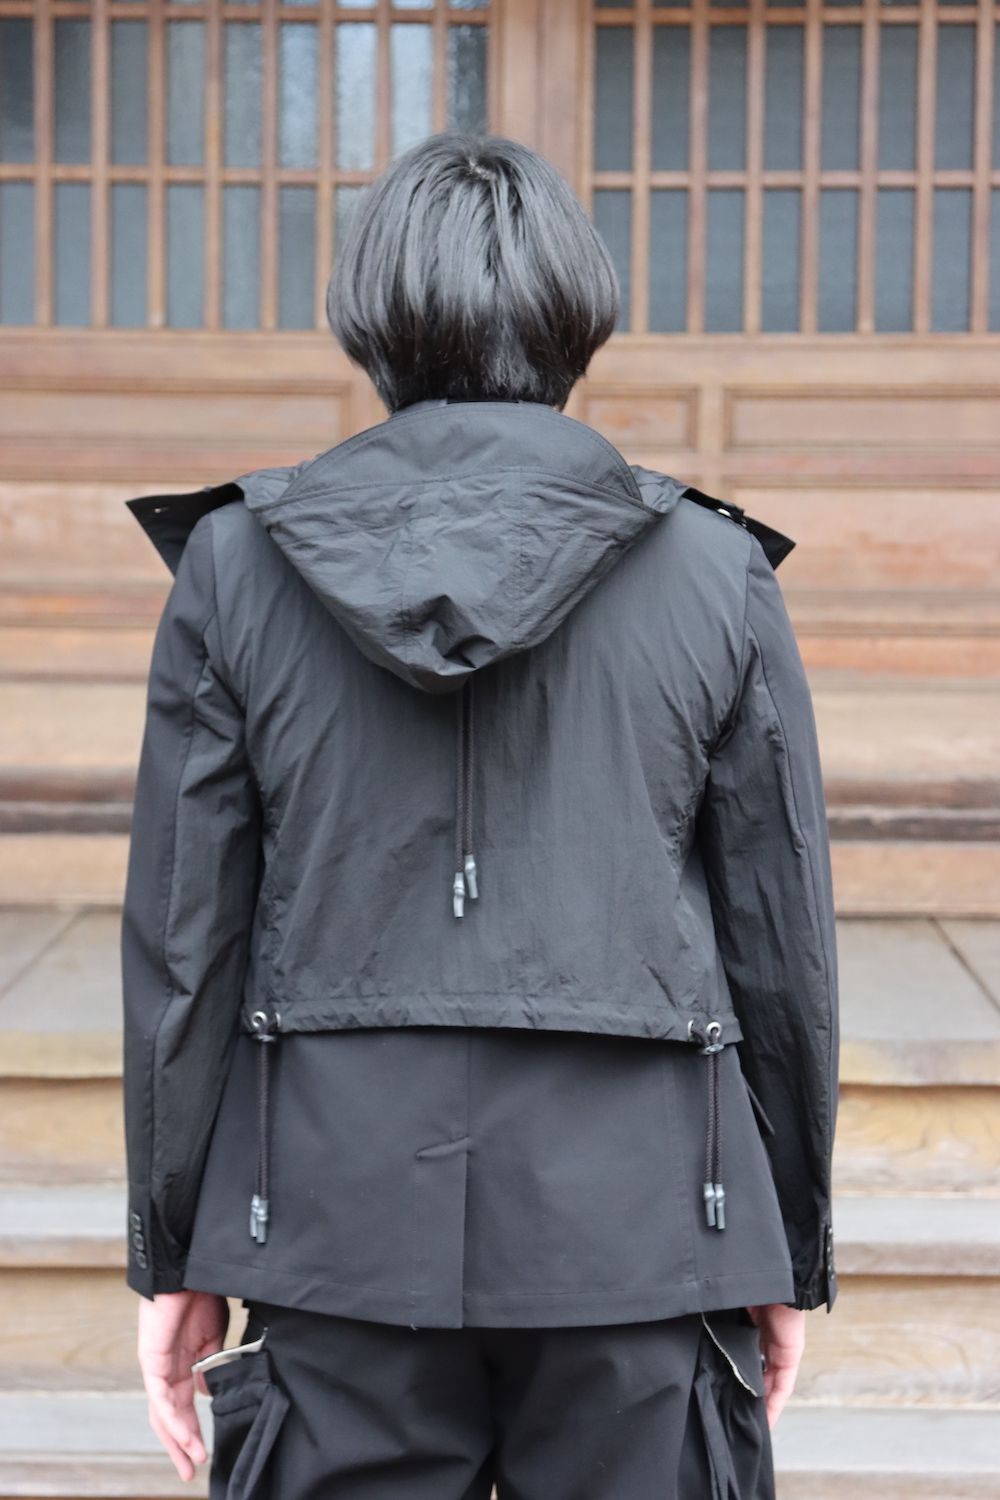 KHOKI Docking jacket type B(22SS-JK-03) style.2022.1.19. | 2197 | mark